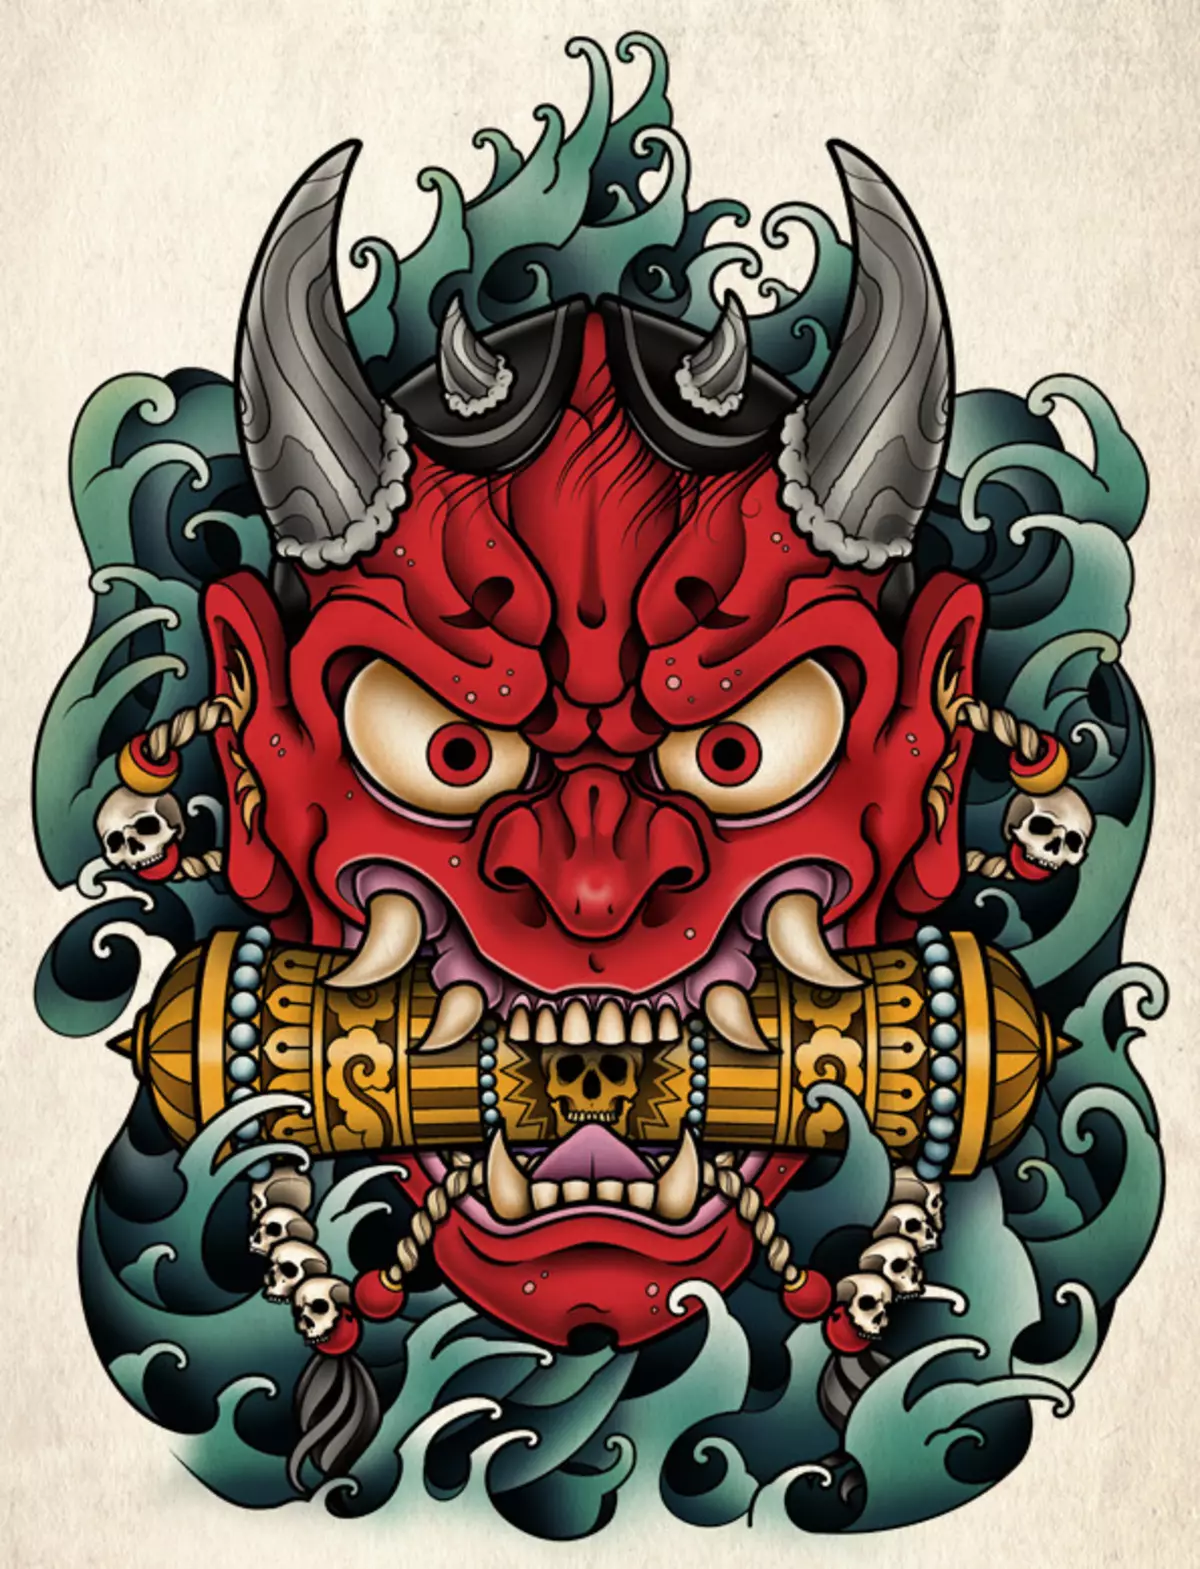 Tatoeage in de vorm van Japanse maskers: demonen en hun betekenissen. Schetsen van tatoeages in de stijl van Japan-maskers. Tattoo 